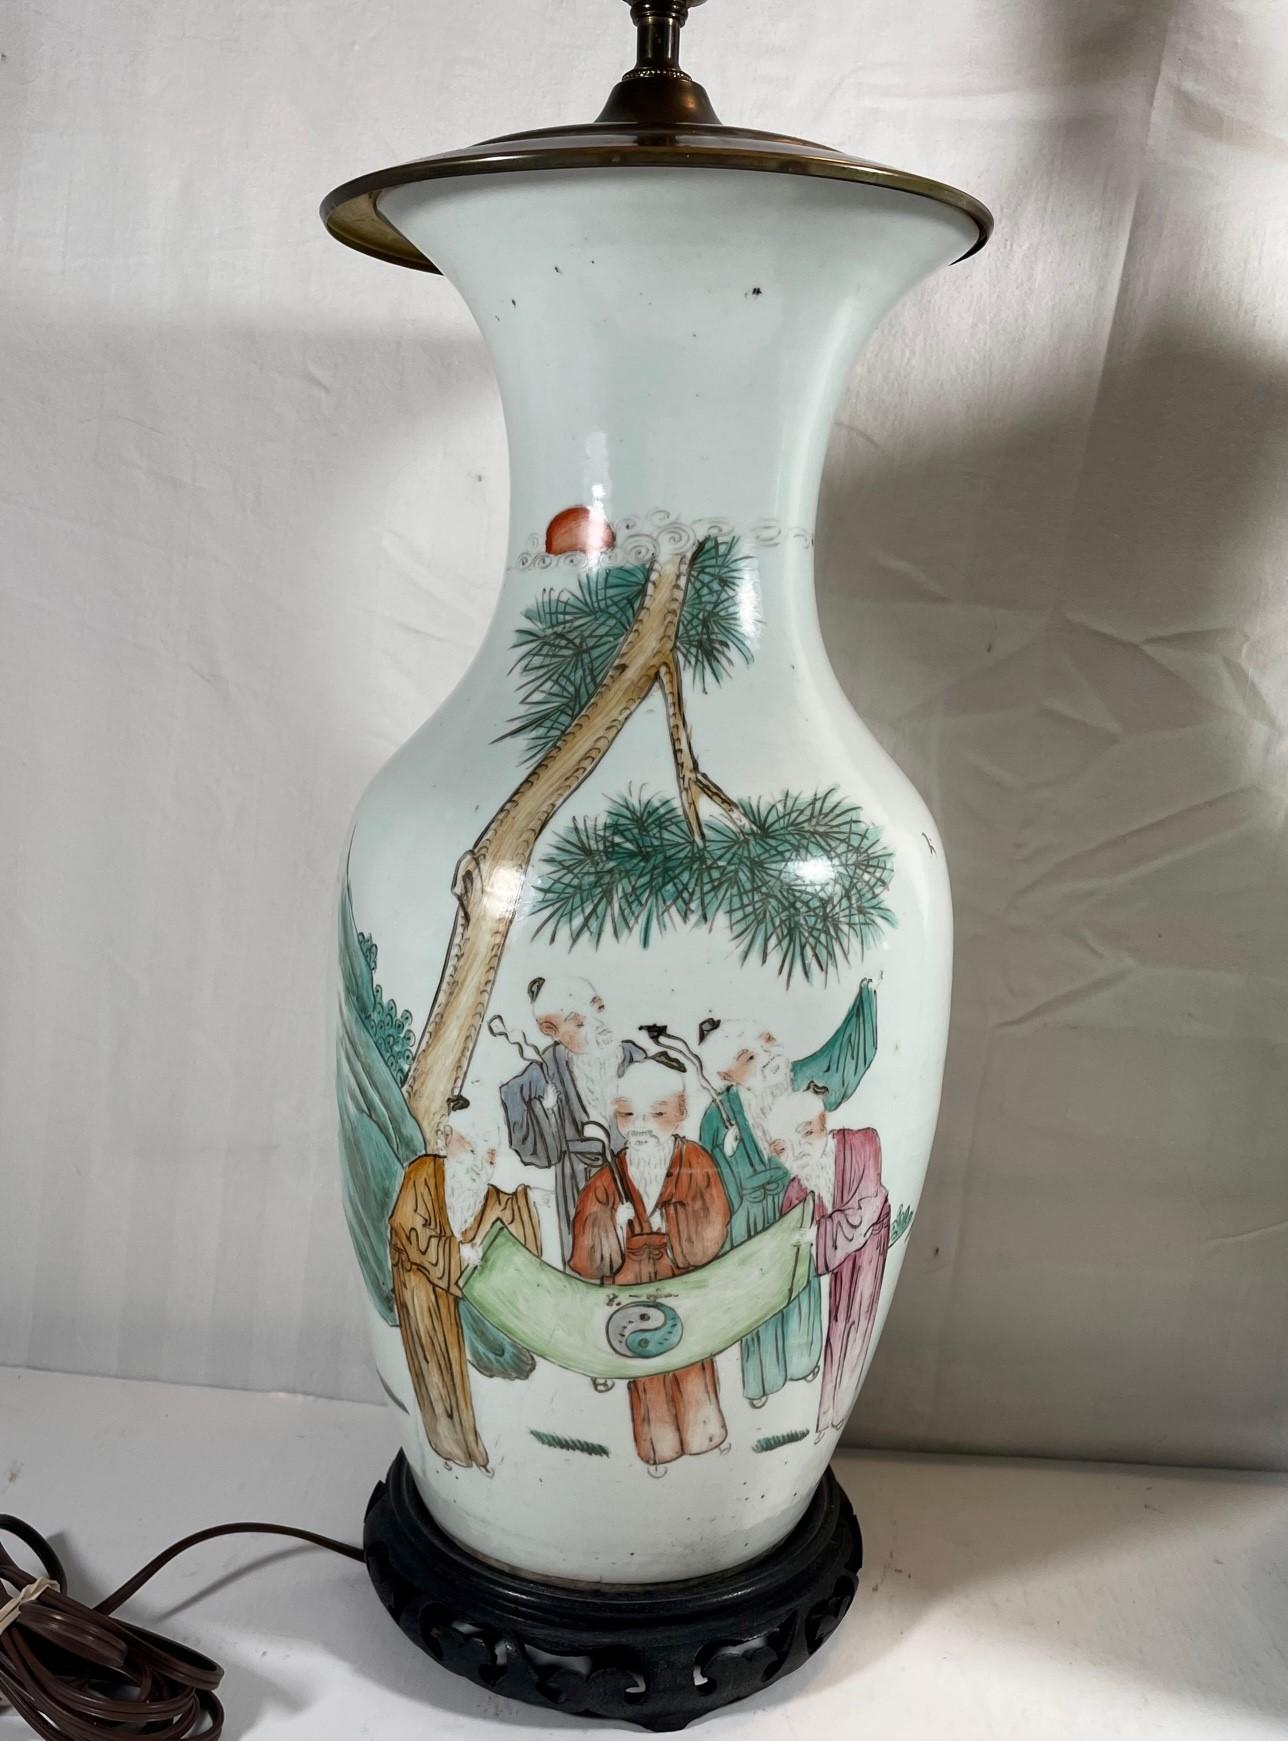 Großes Paar antike chinesische Famille Rose Porzellan Baluster Vasen.

Zwei große chinesische Famille-Rose-Porzellanvasen aus dem frühen 20. Jahrhundert, die zu Tischlampen umfunktioniert wurden. Diese Vasen gehören zu den exquisitesten. Famille